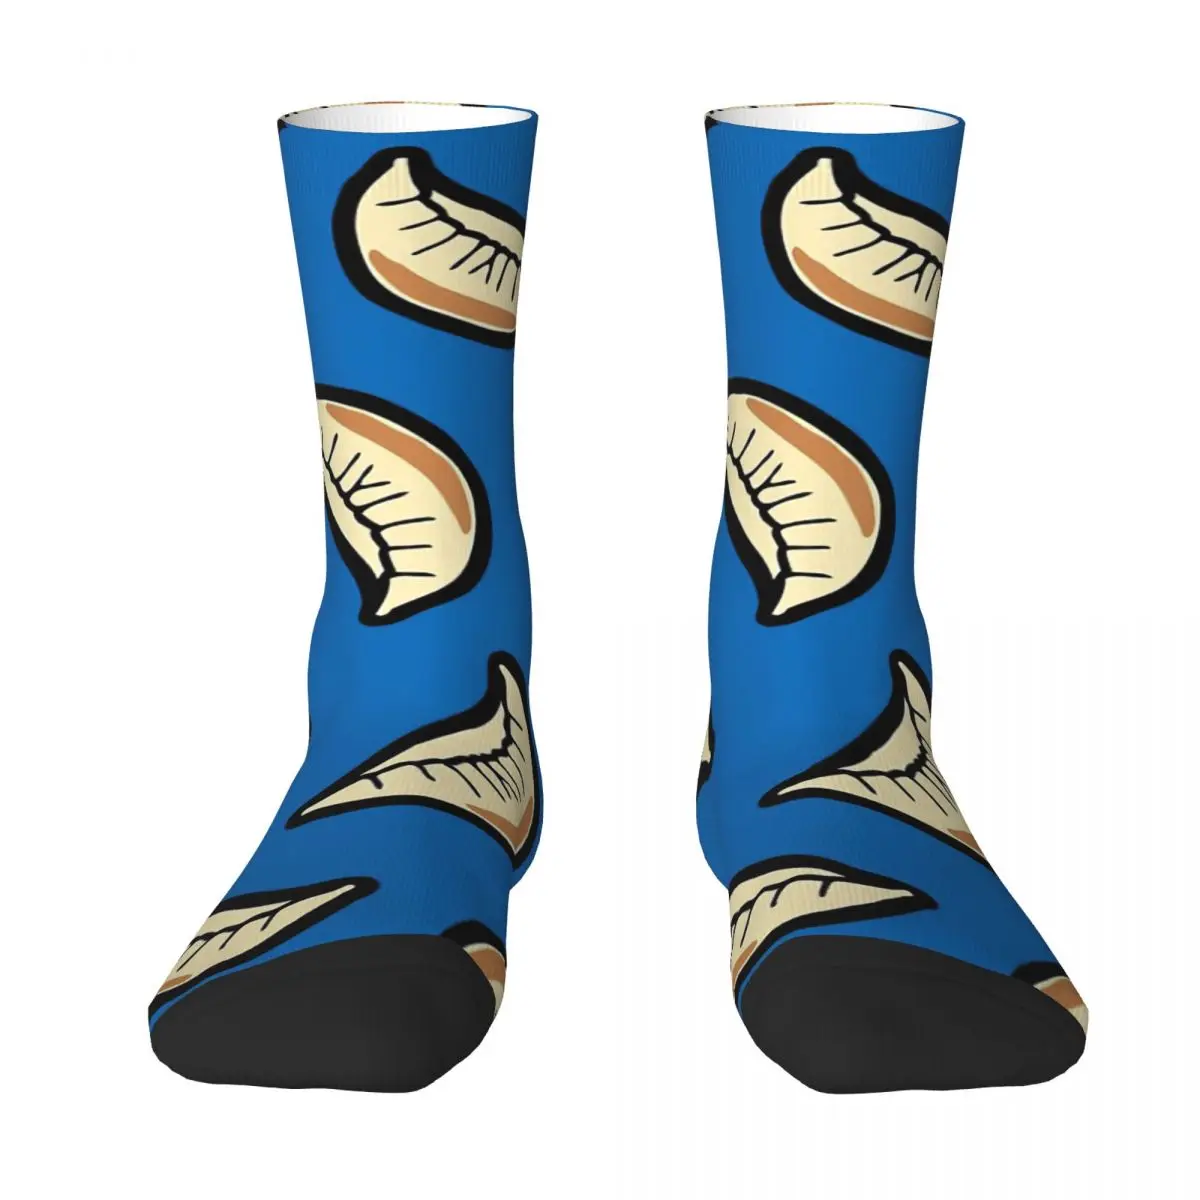 Носки для взрослых Gyoza с рисунком пельменей, носки унисекс, мужские носки женские носки носки для взрослых с рисунком спагетти и фрикаделек голубые носки унисекс мужские носки женские носки